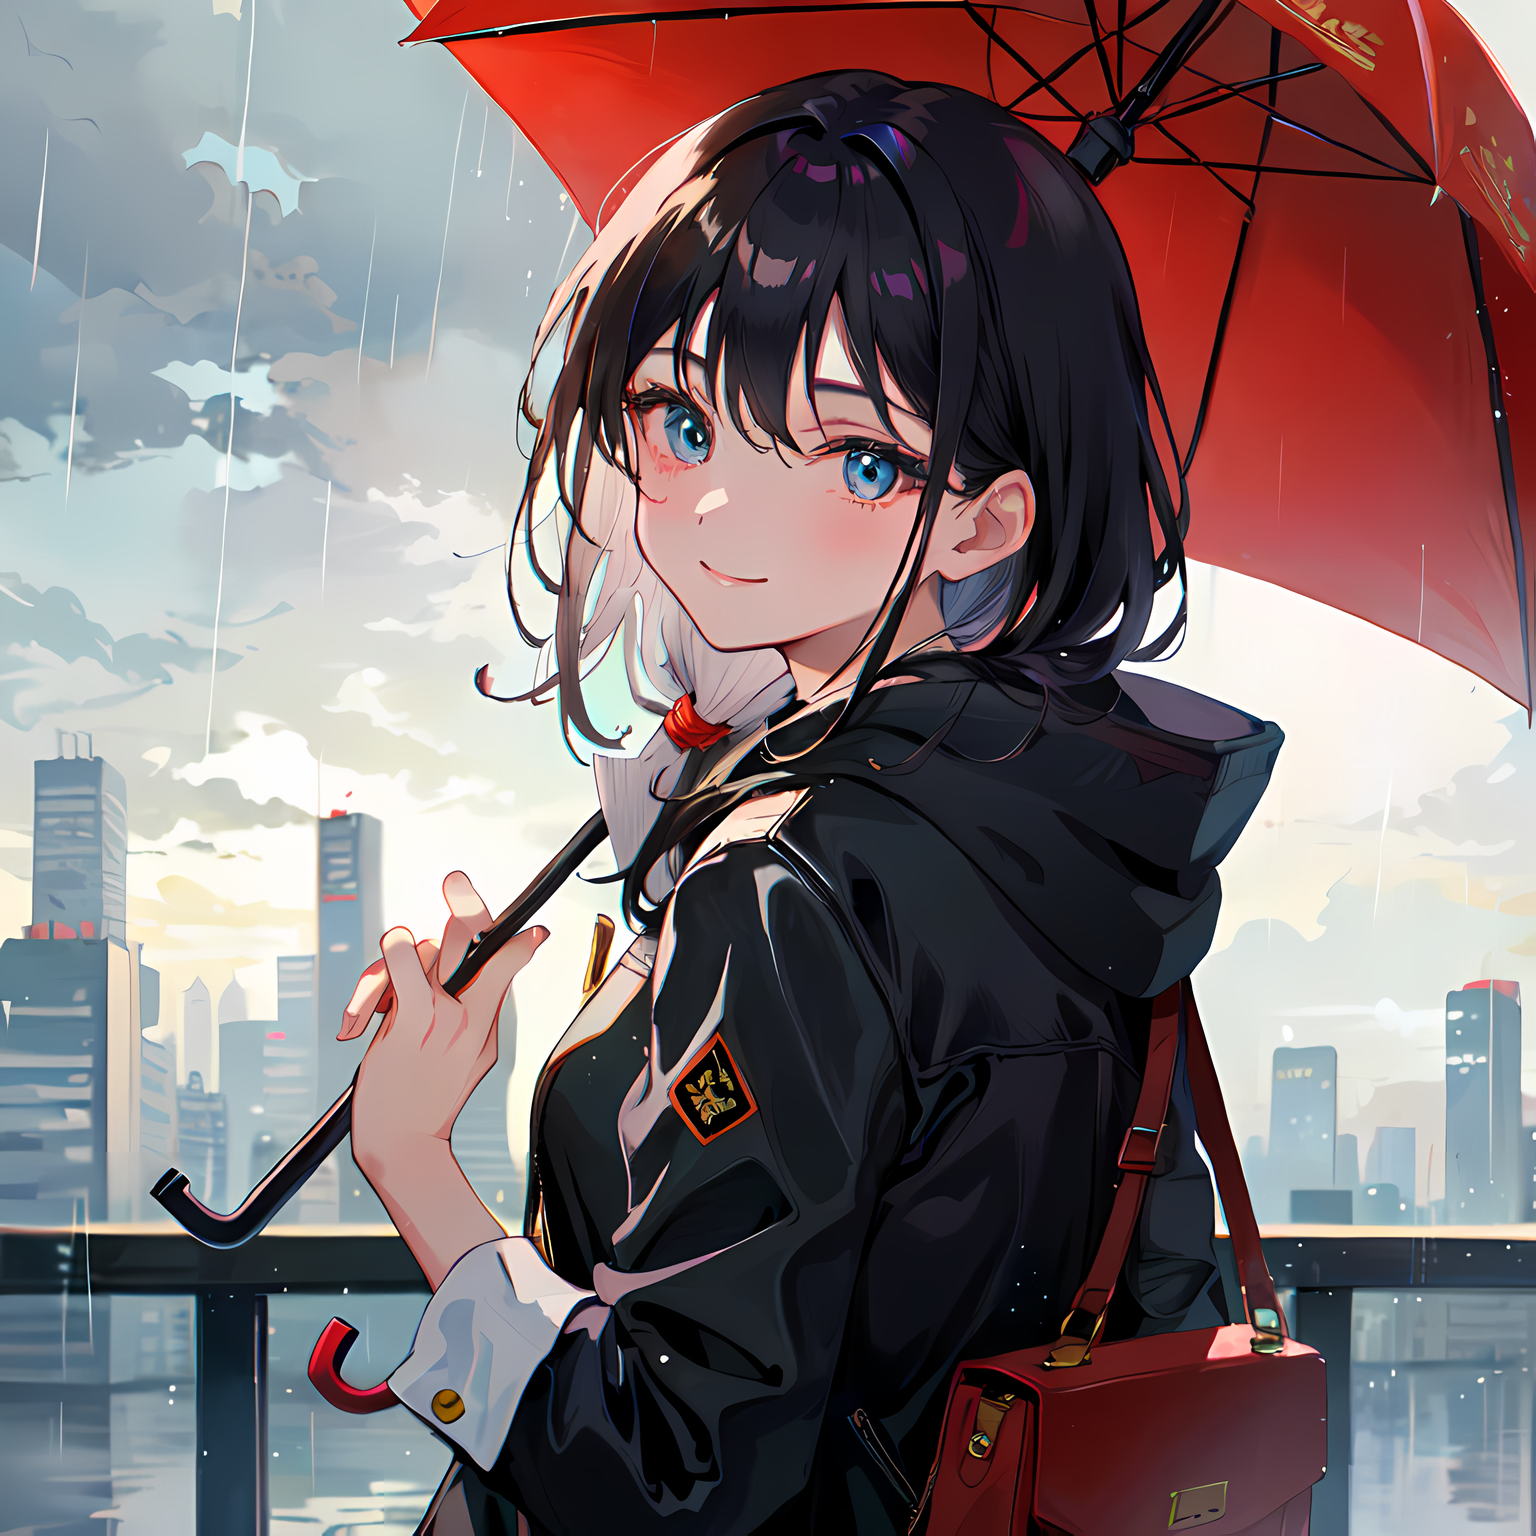 共享的雨伞下，她微笑着望向大厦和桥梁。